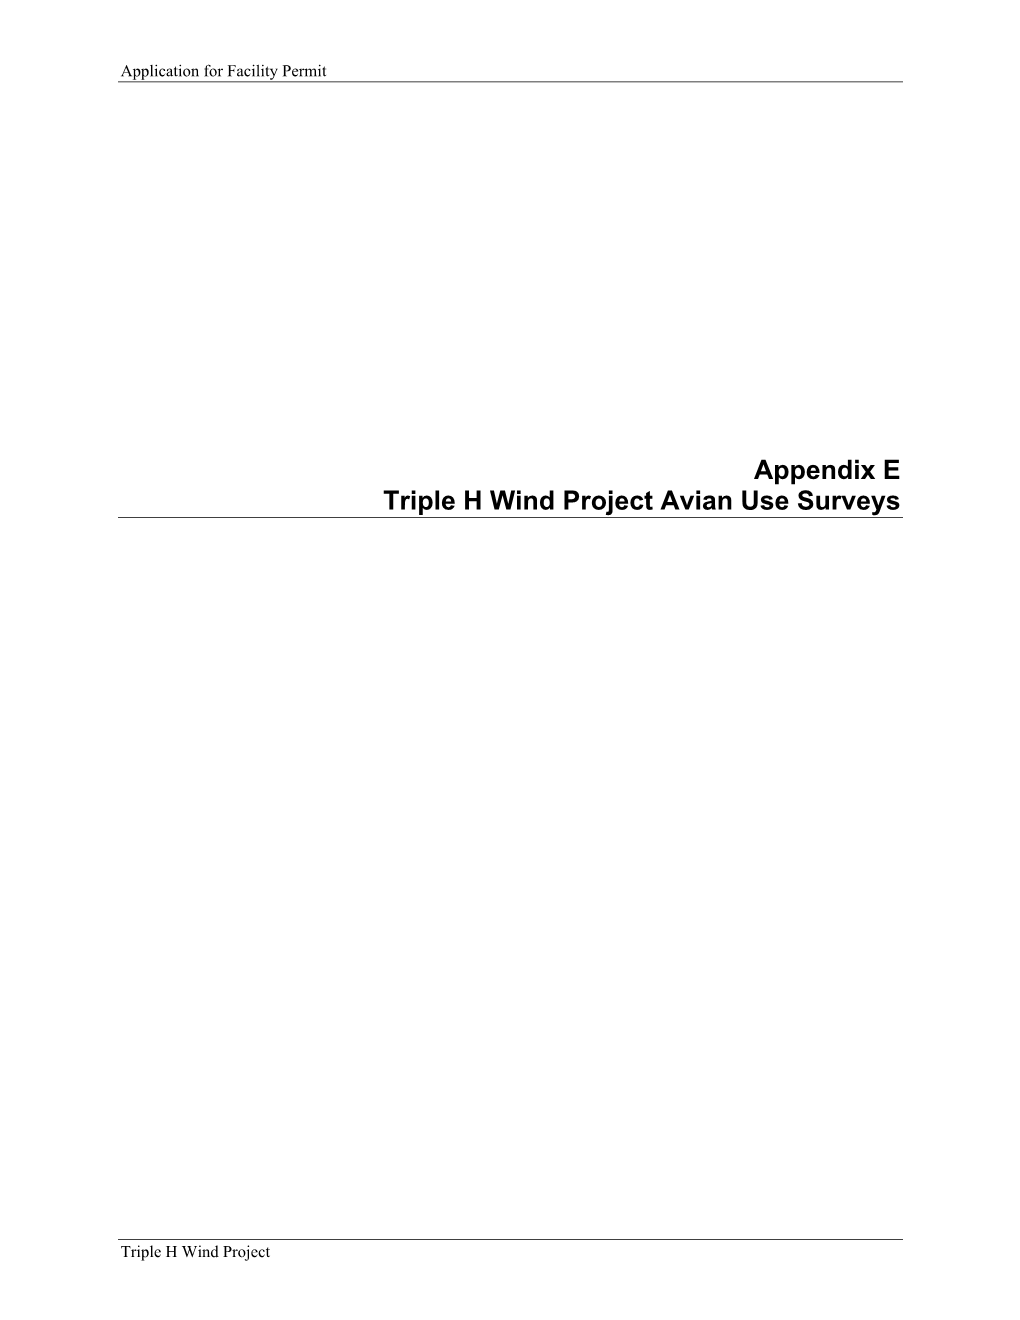 Appendix E Triple H Wind Project Avian Use Surveys